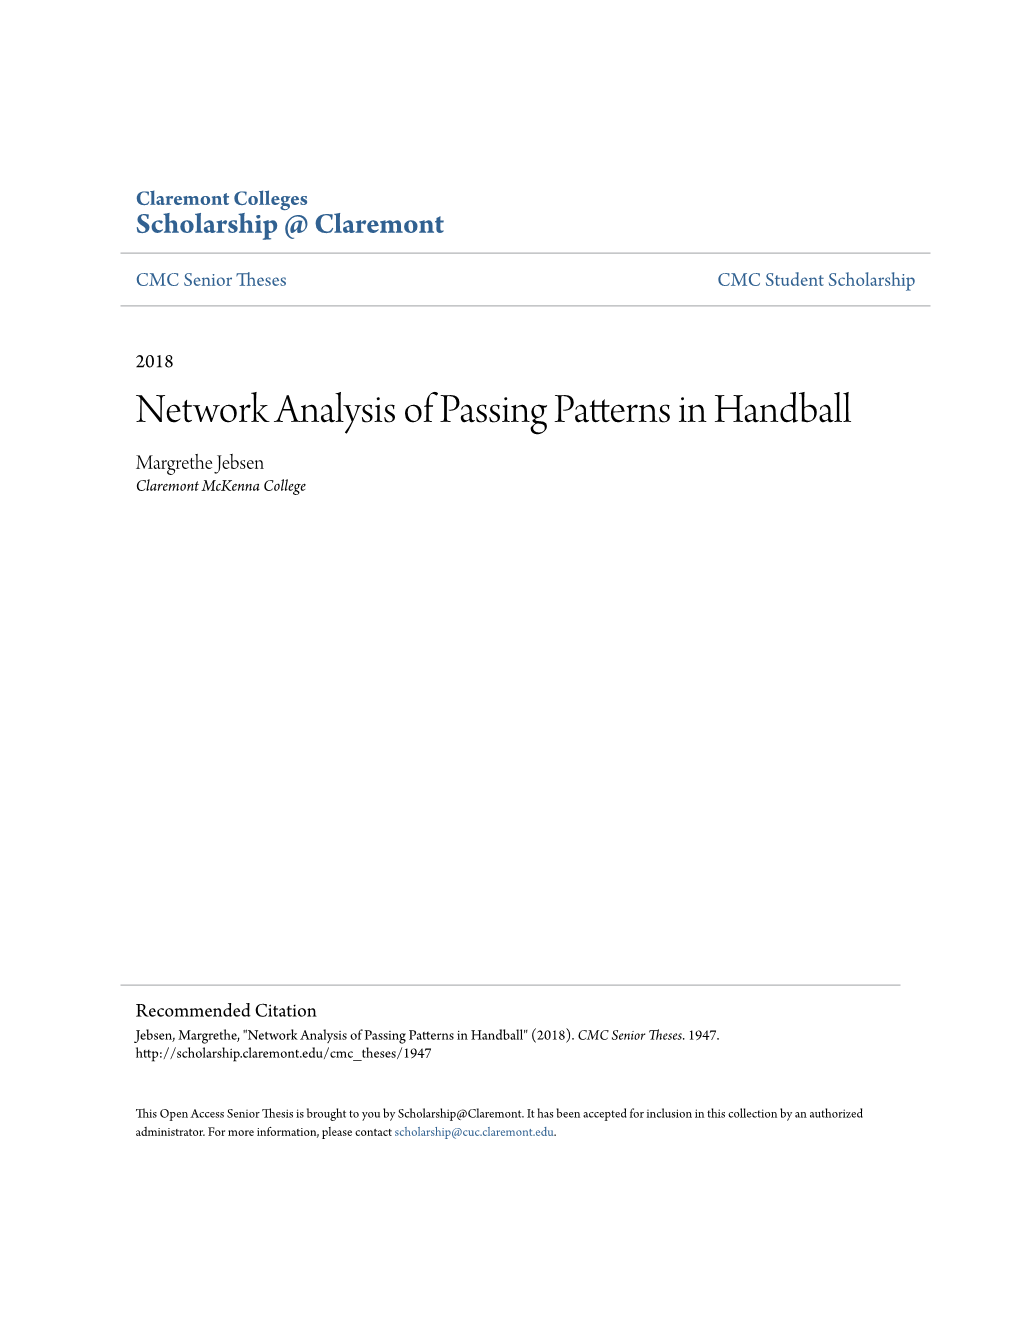 Network Analysis of Passing Patterns in Handball Margrethe Jebsen Claremont Mckenna College